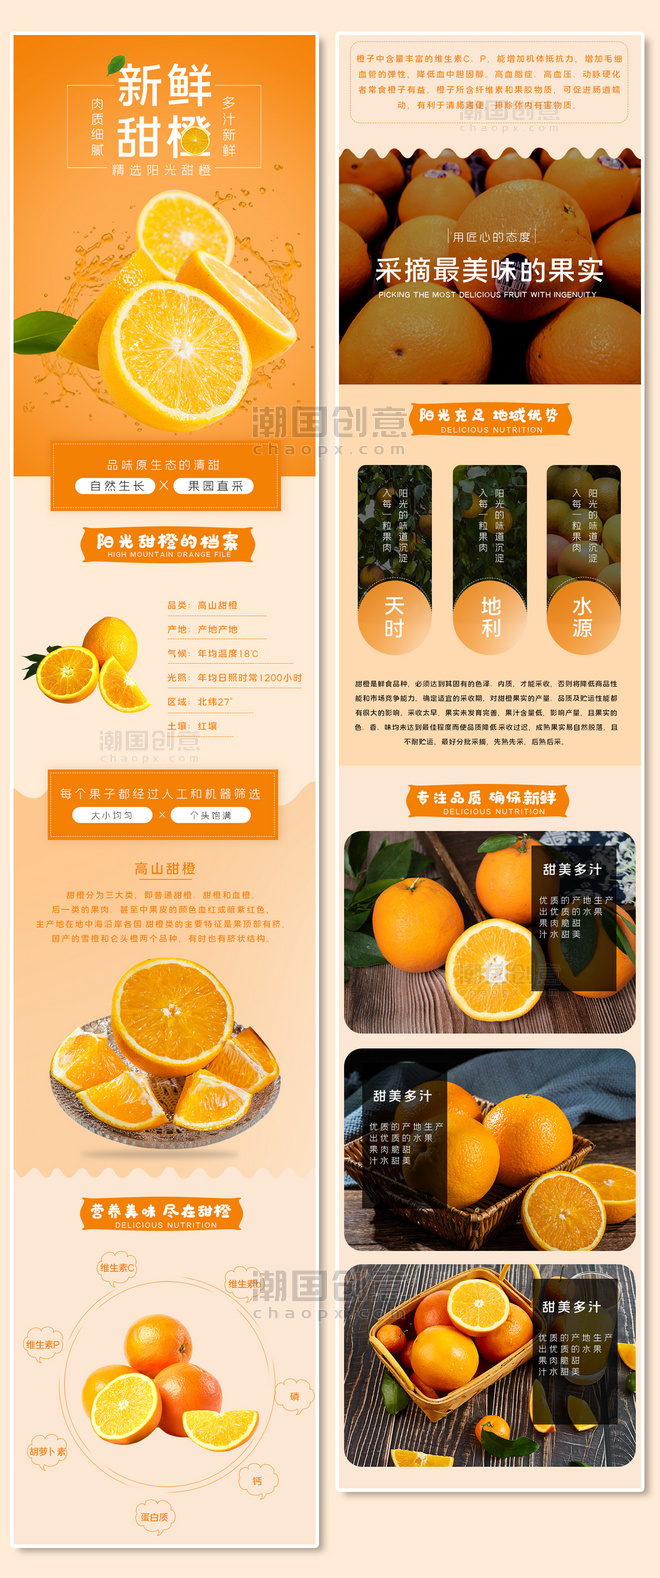 夏季水果生鲜促销宣传橙子鲜橙橘子橙色白色简约电商详情页